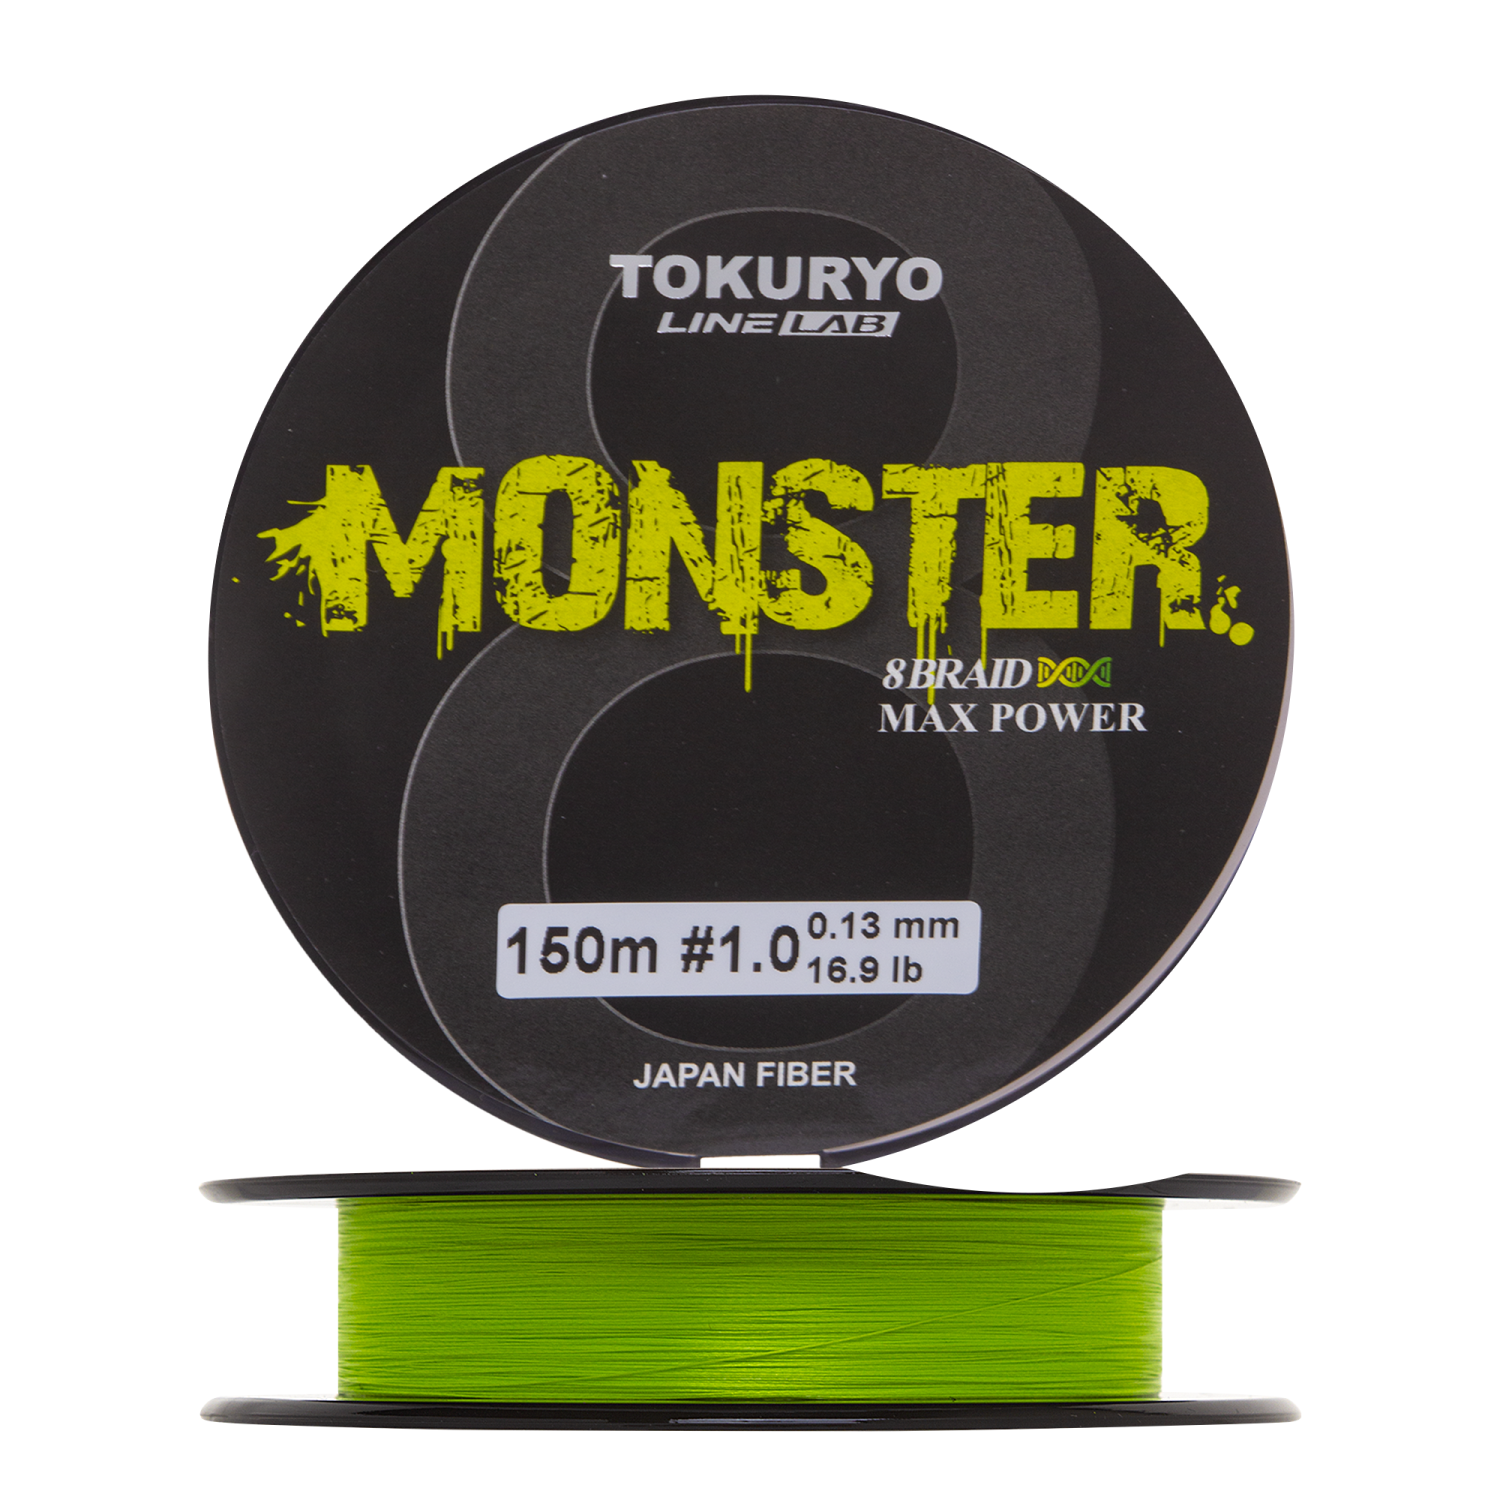 шнур плетеный tokuryo monster x8 1 0 13мм 150м light green сделано в японии Шнур плетеный Tokuryo Monster X8 #1 0,13мм 150м (light green)